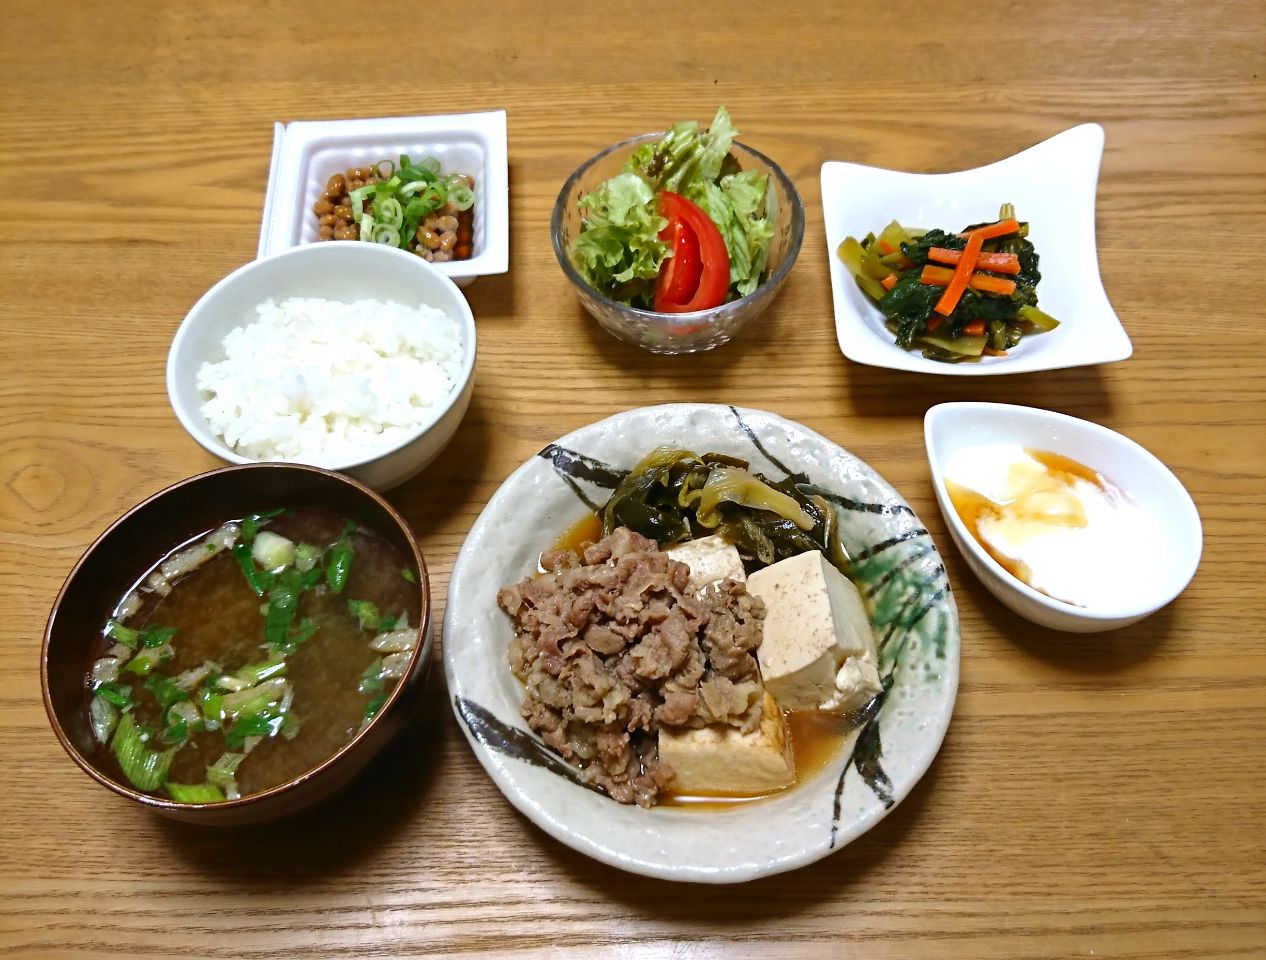 ゆーママさんの肉豆腐晩ごはん ブレンドしょうゆグランプリ18 ヤマサ醤油株式会社